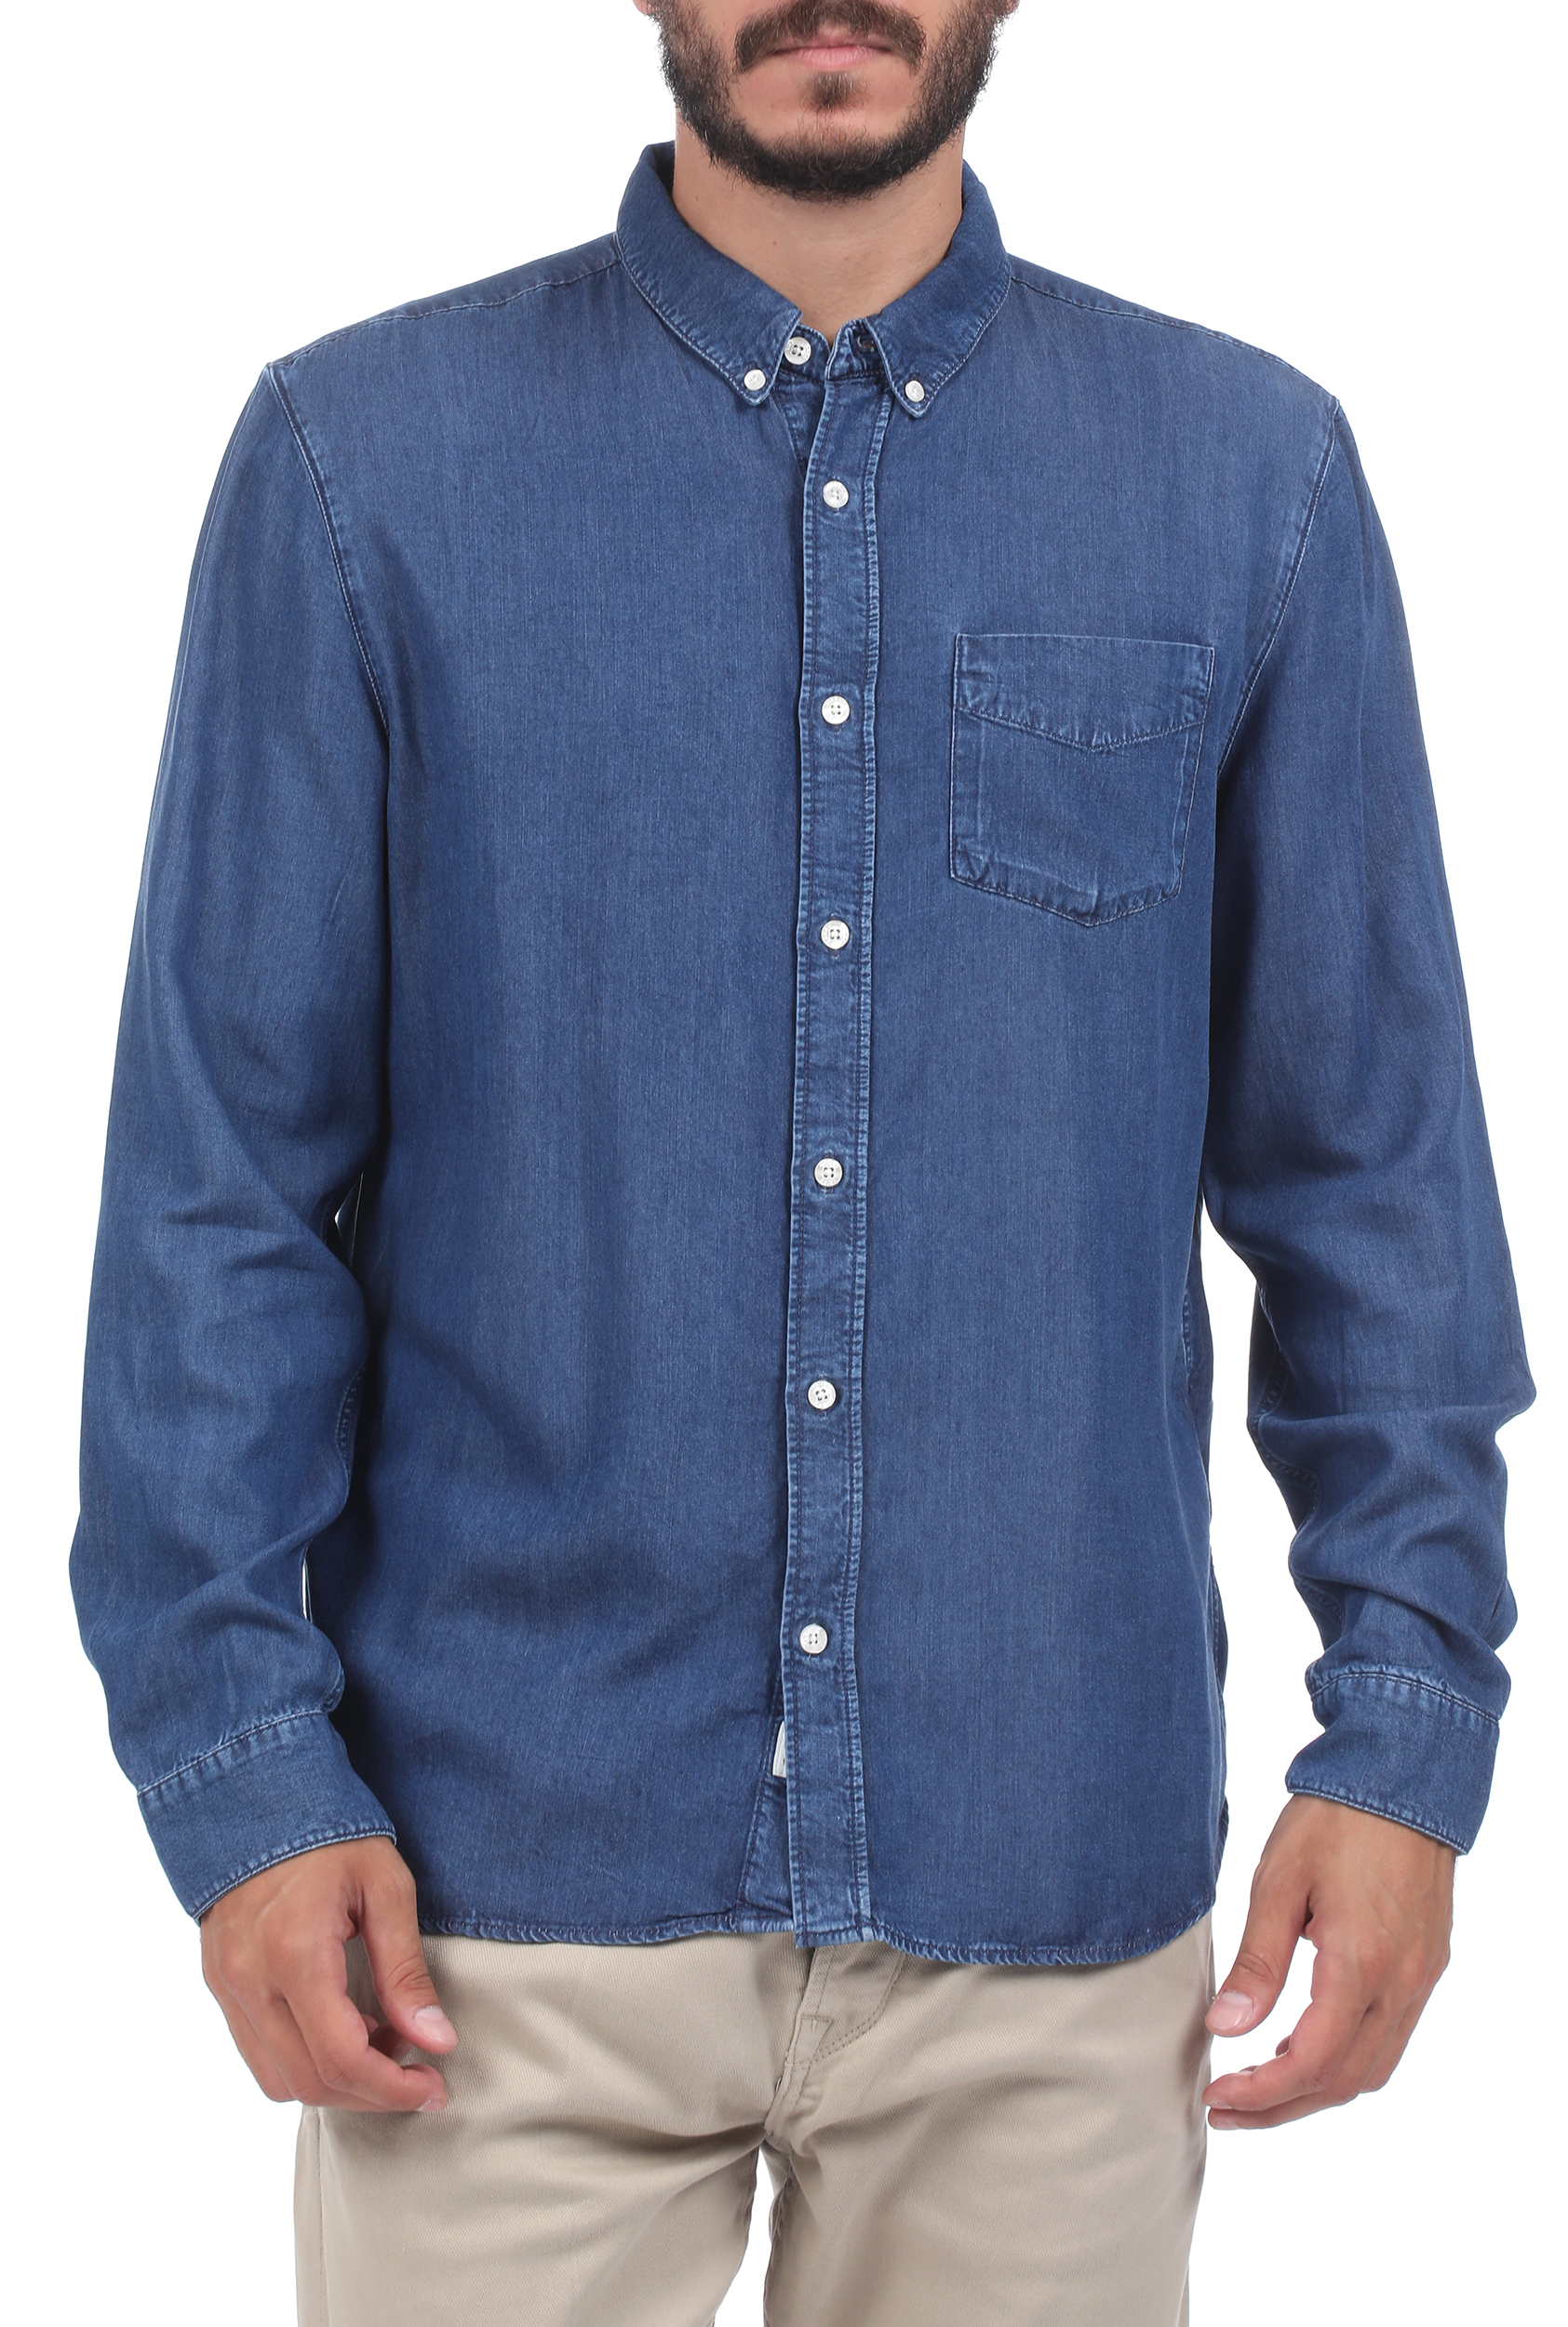 Ανδρικά/Ρούχα/Πουκάμισα/Μακρυμάνικα GABBA - Ανδρικό denim πουκάμισο GABBA Ranger μπλε